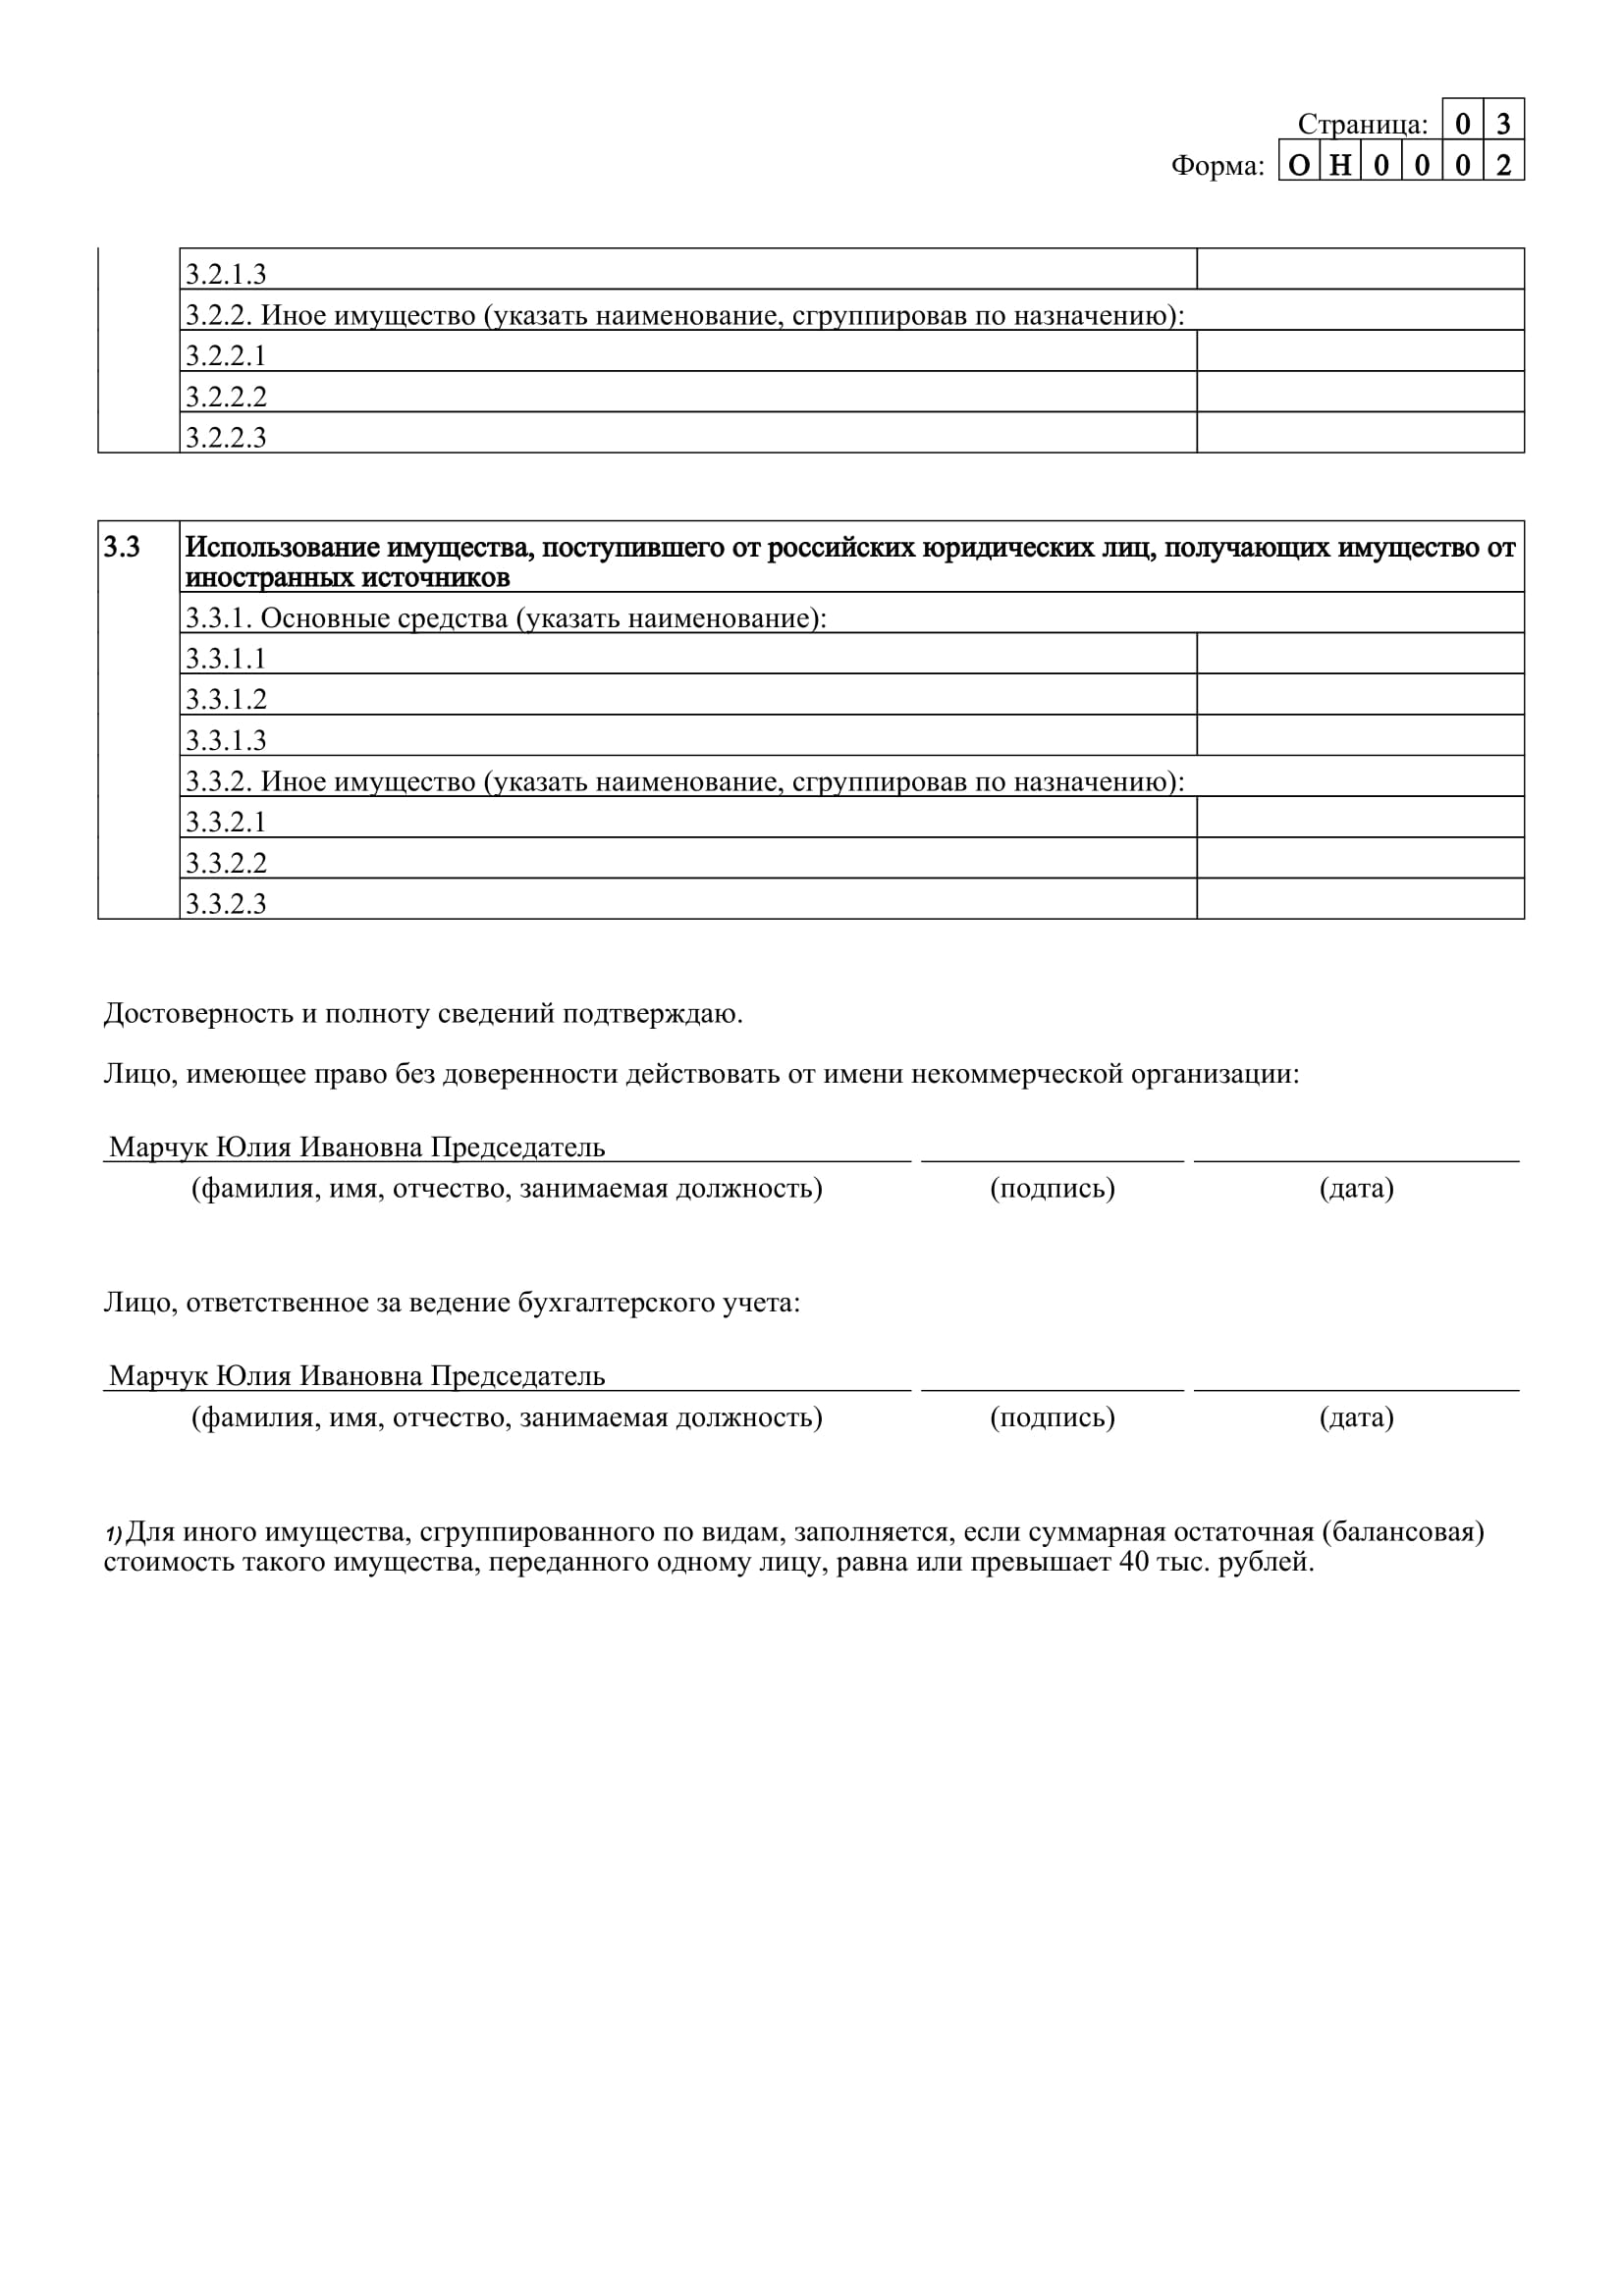 Отчет Севастопольской Коллегии адвокатов 